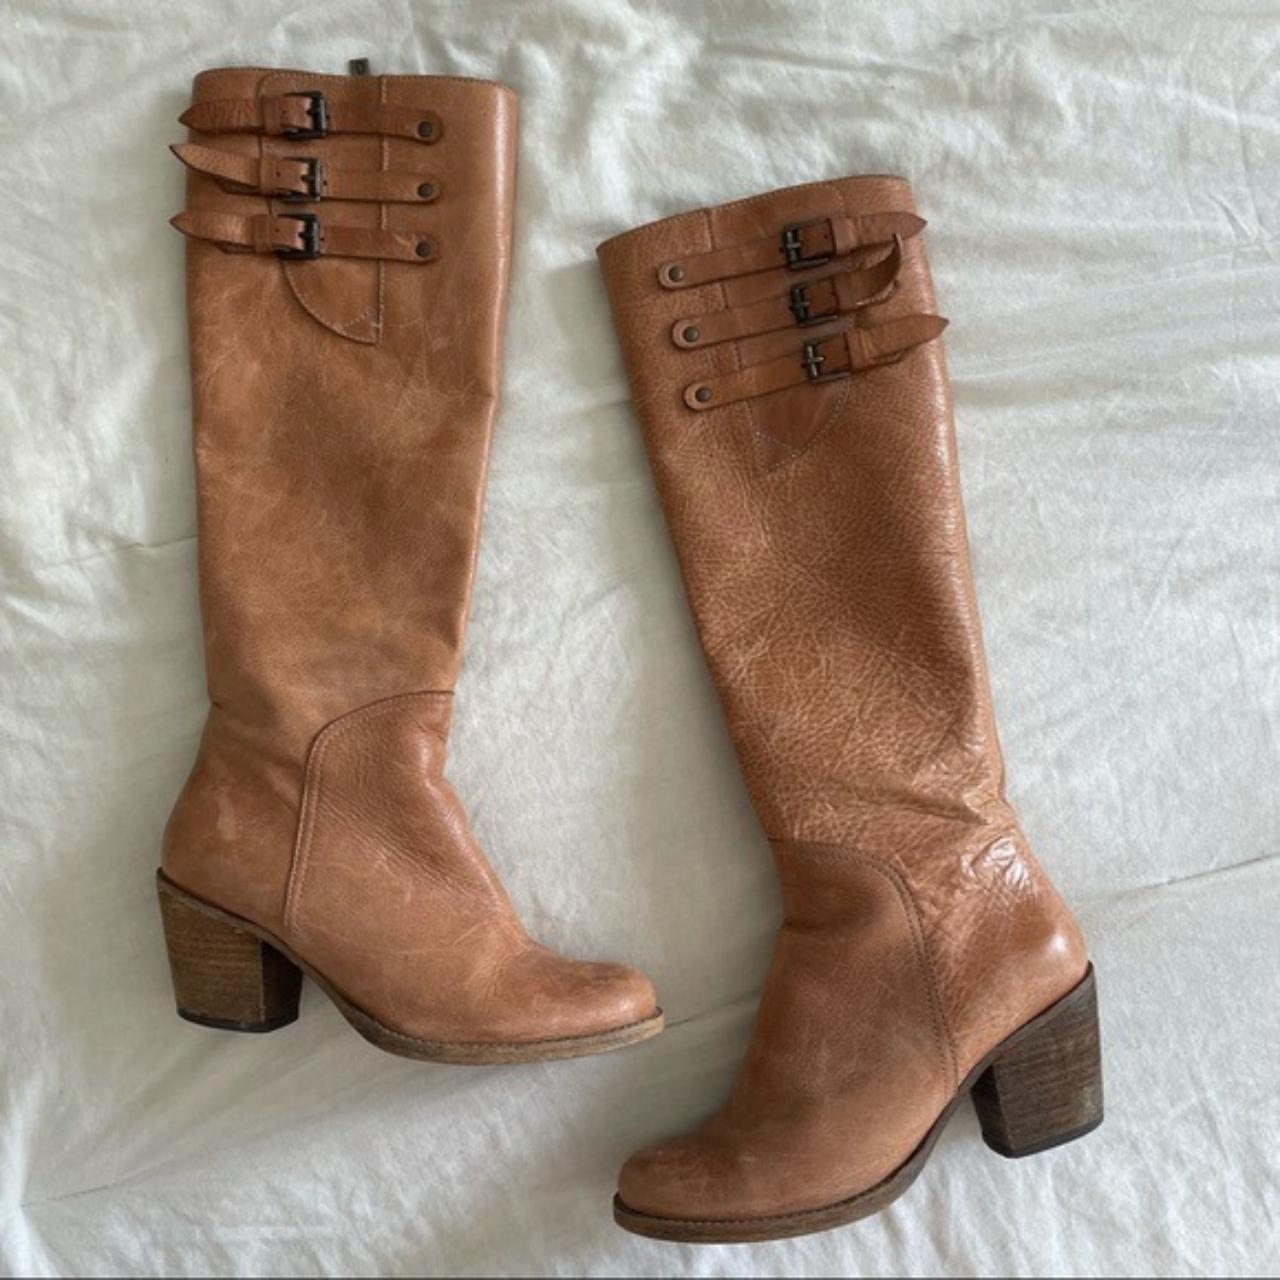 DUOltd Women's Boots